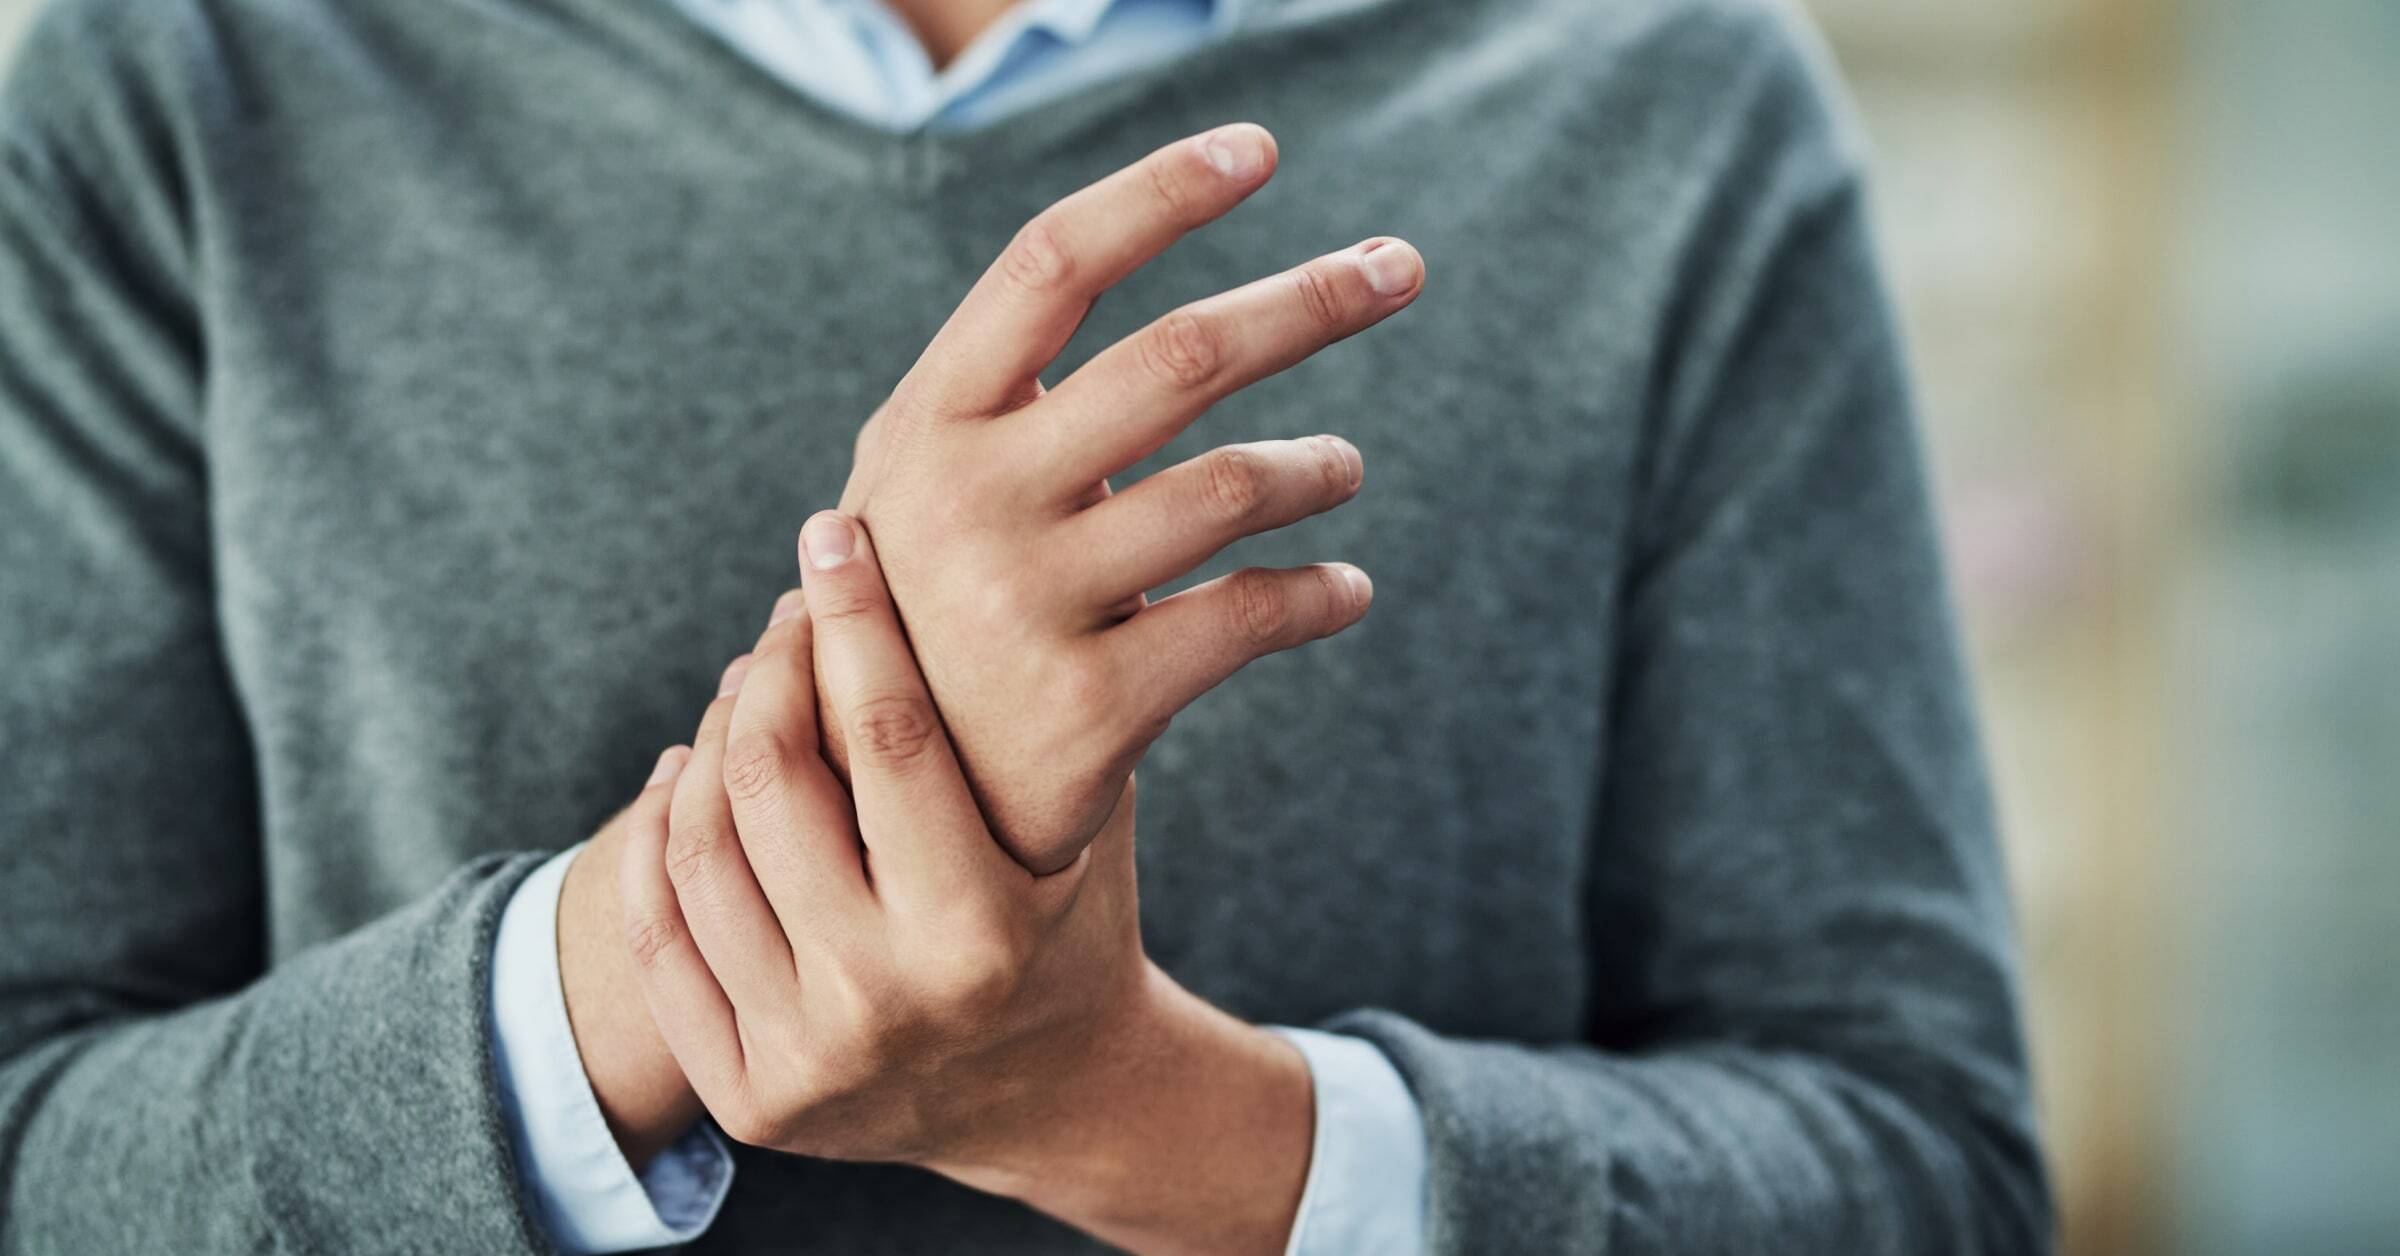 Med digital artrosbehandling kan patienter med handartros minska smärta och stelhet i händer och fingrar, visar ny studie.